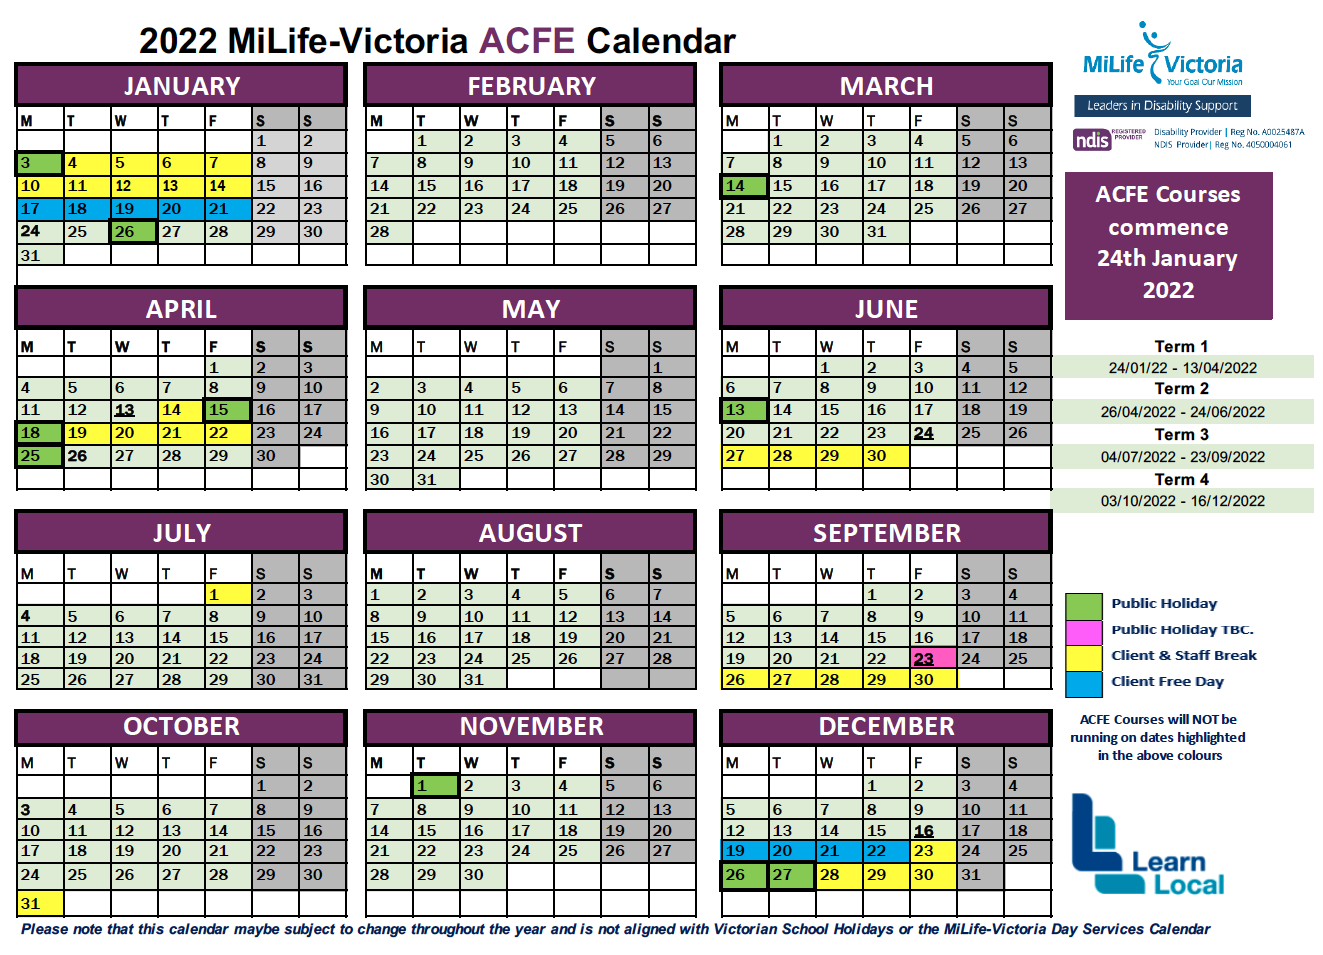 MiLife-Victoria ACFE Calendar 2022